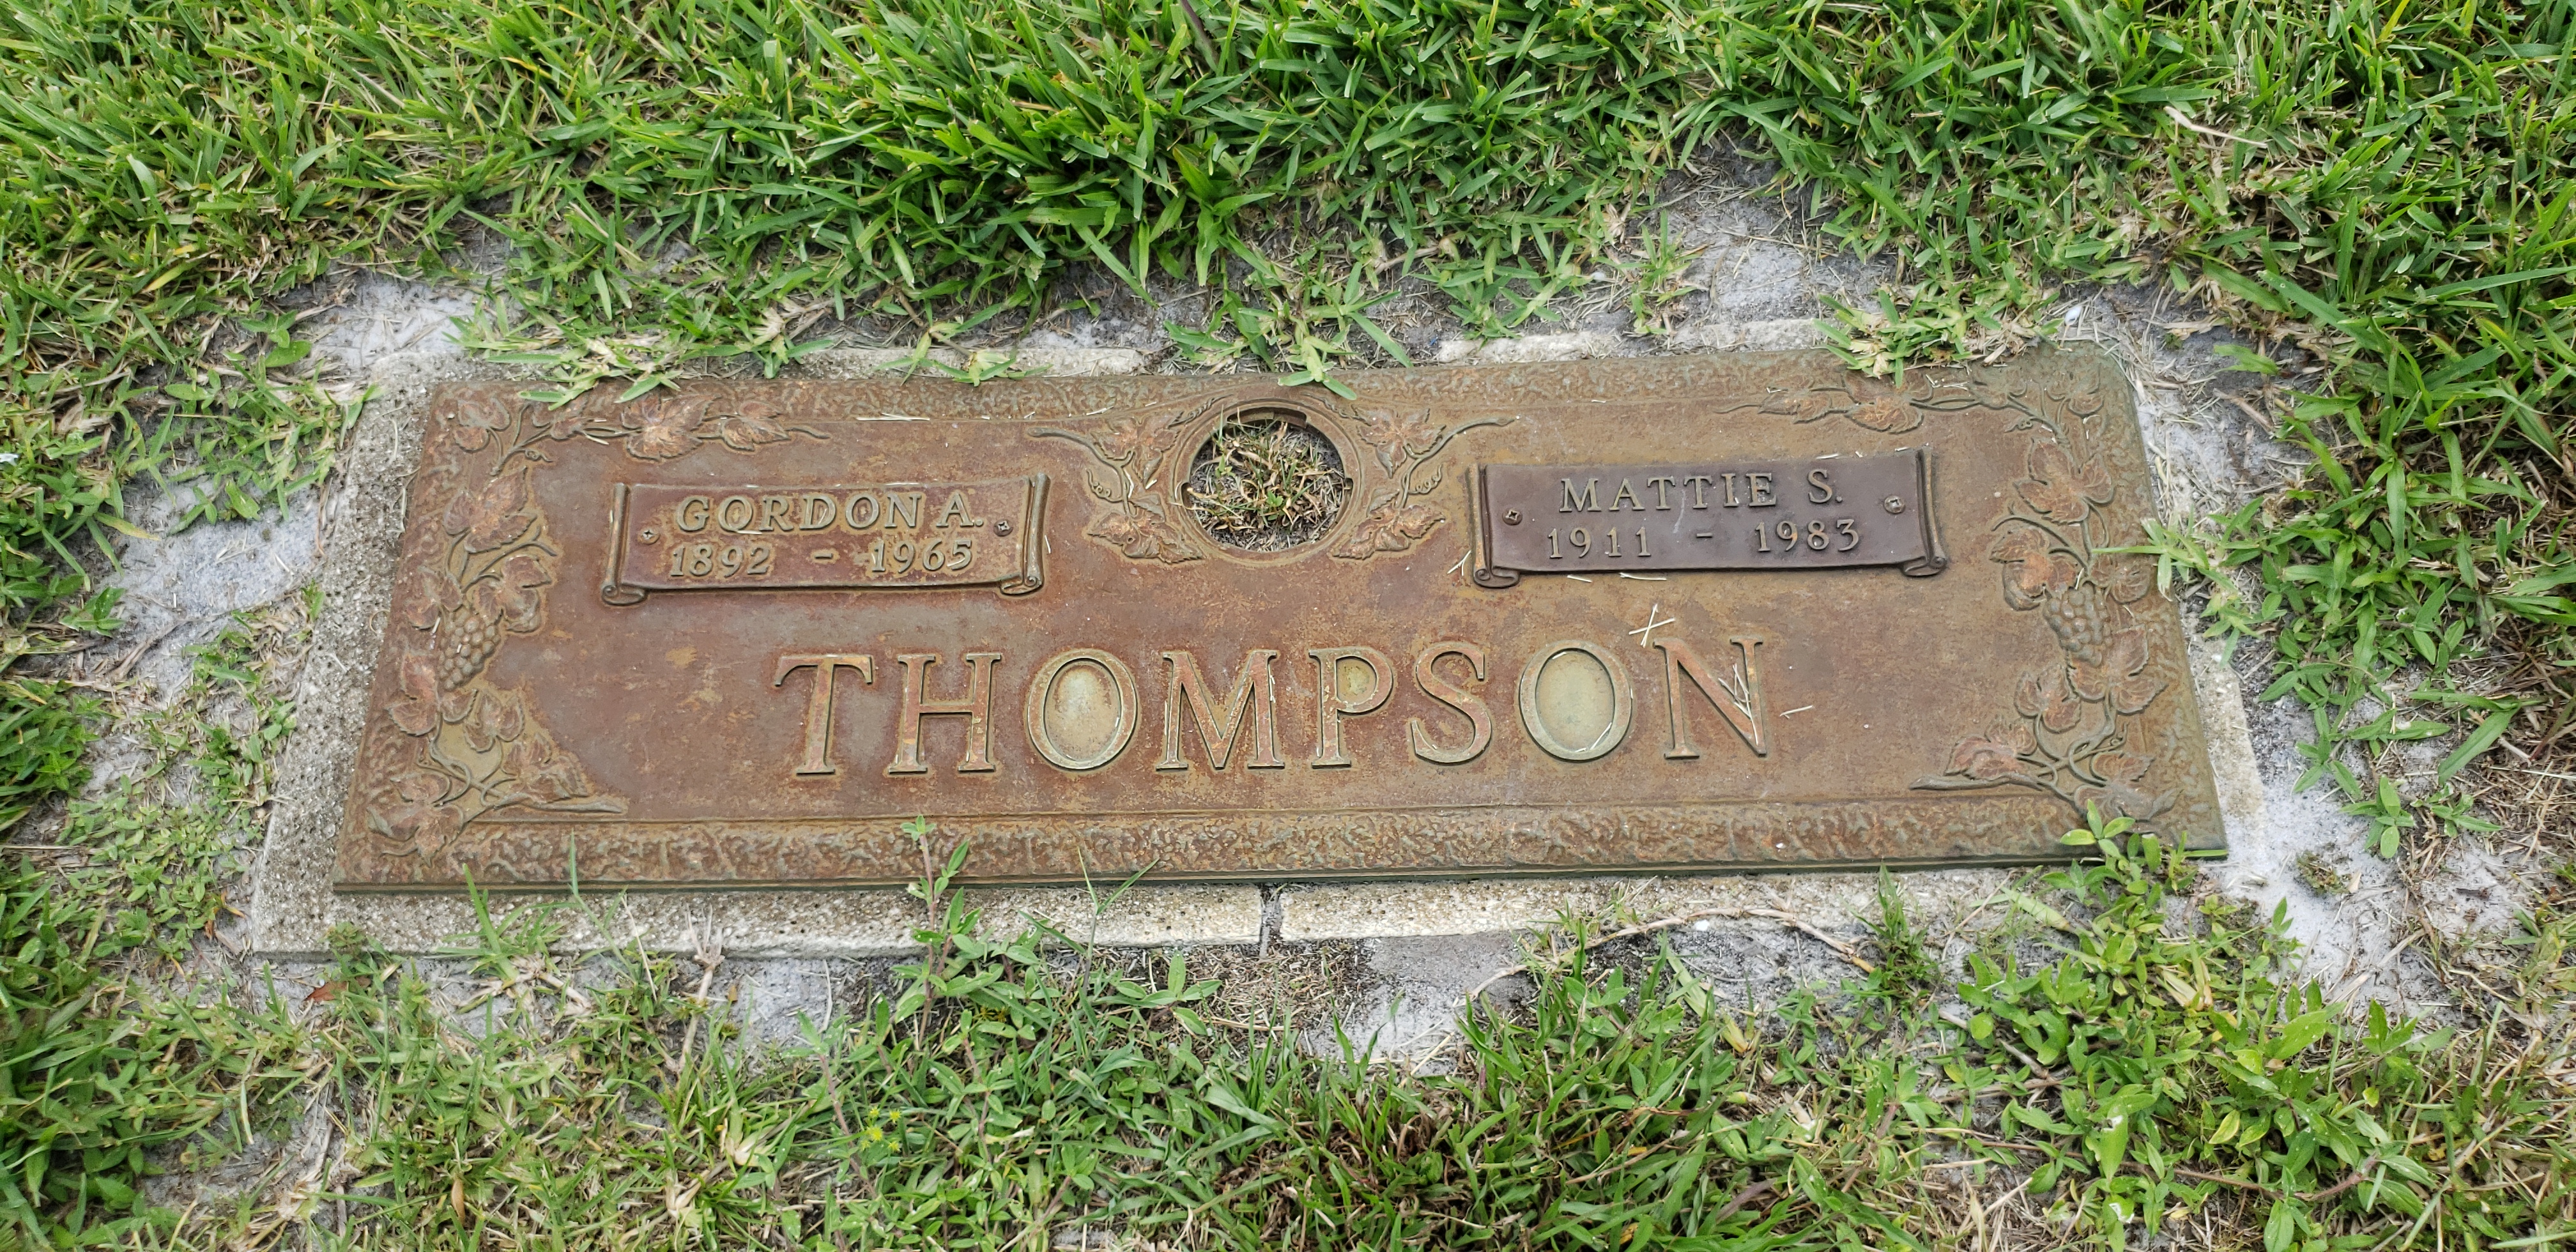 Gordon A Thompson